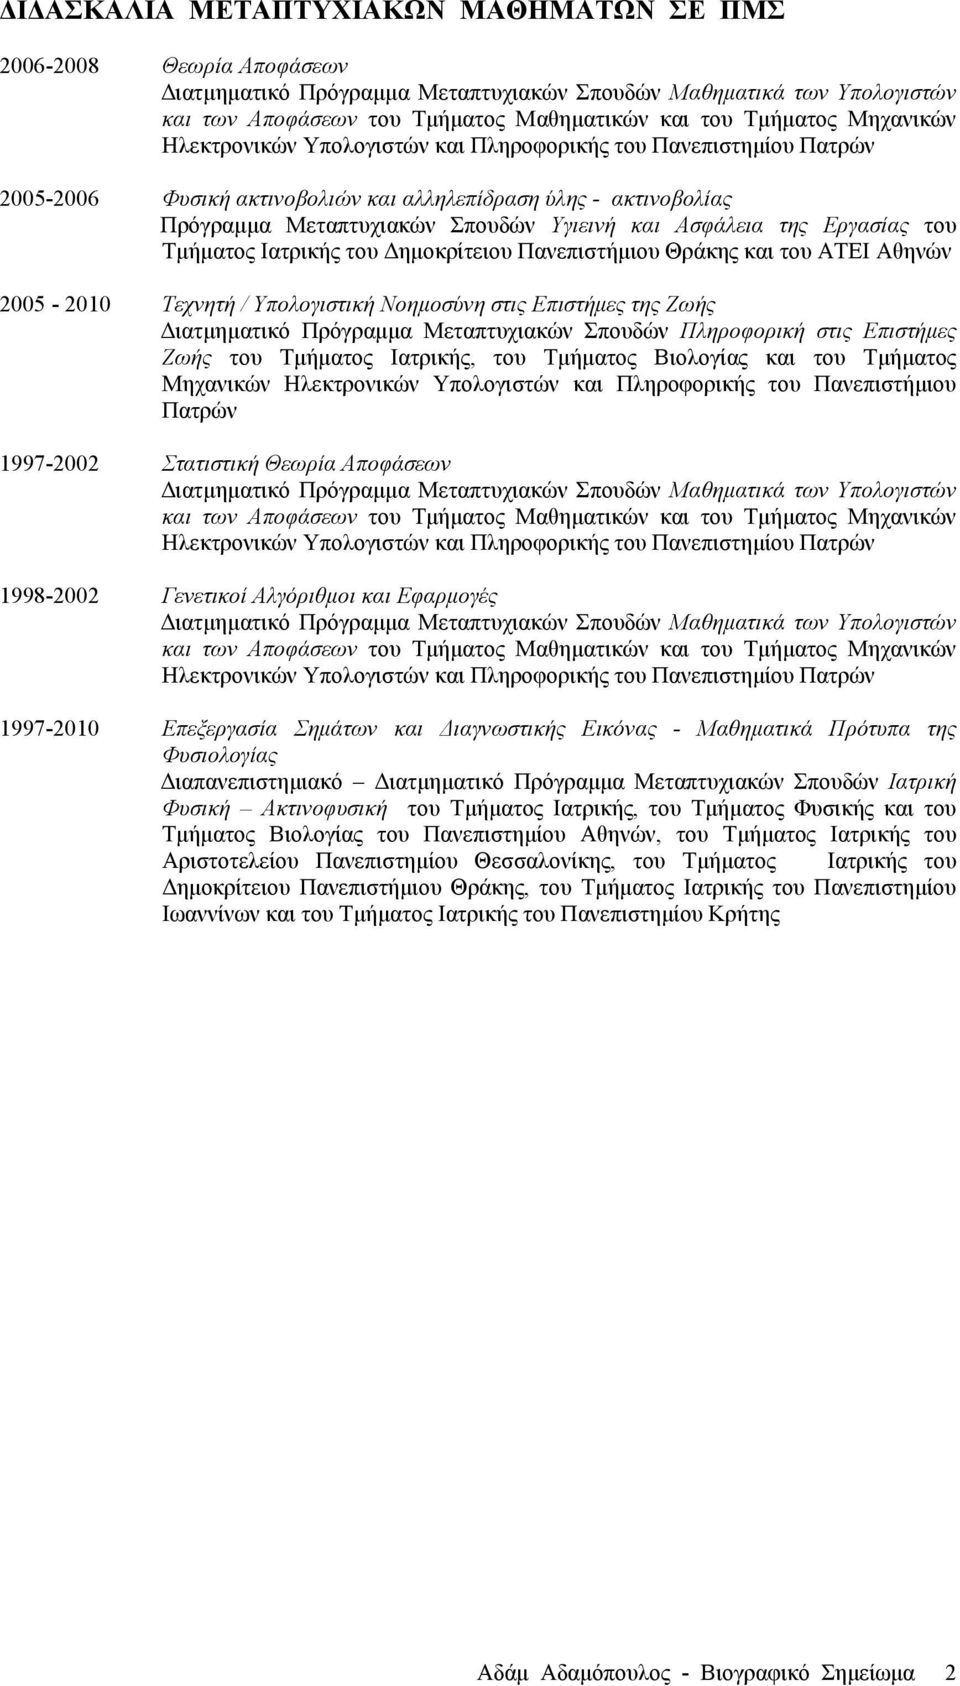 Ασφάλεια της Εργασίας του Τµήµατος Ιατρικής του Δηµοκρίτειου Πανεπιστήµιου Θράκης και του ΑΤΕΙ Αθηνών 2005-2010 Τεχνητή / Υπολογιστική Νοηµοσύνη στις Επιστήµες της Ζωής Διατµηµατικό Πρόγραµµα